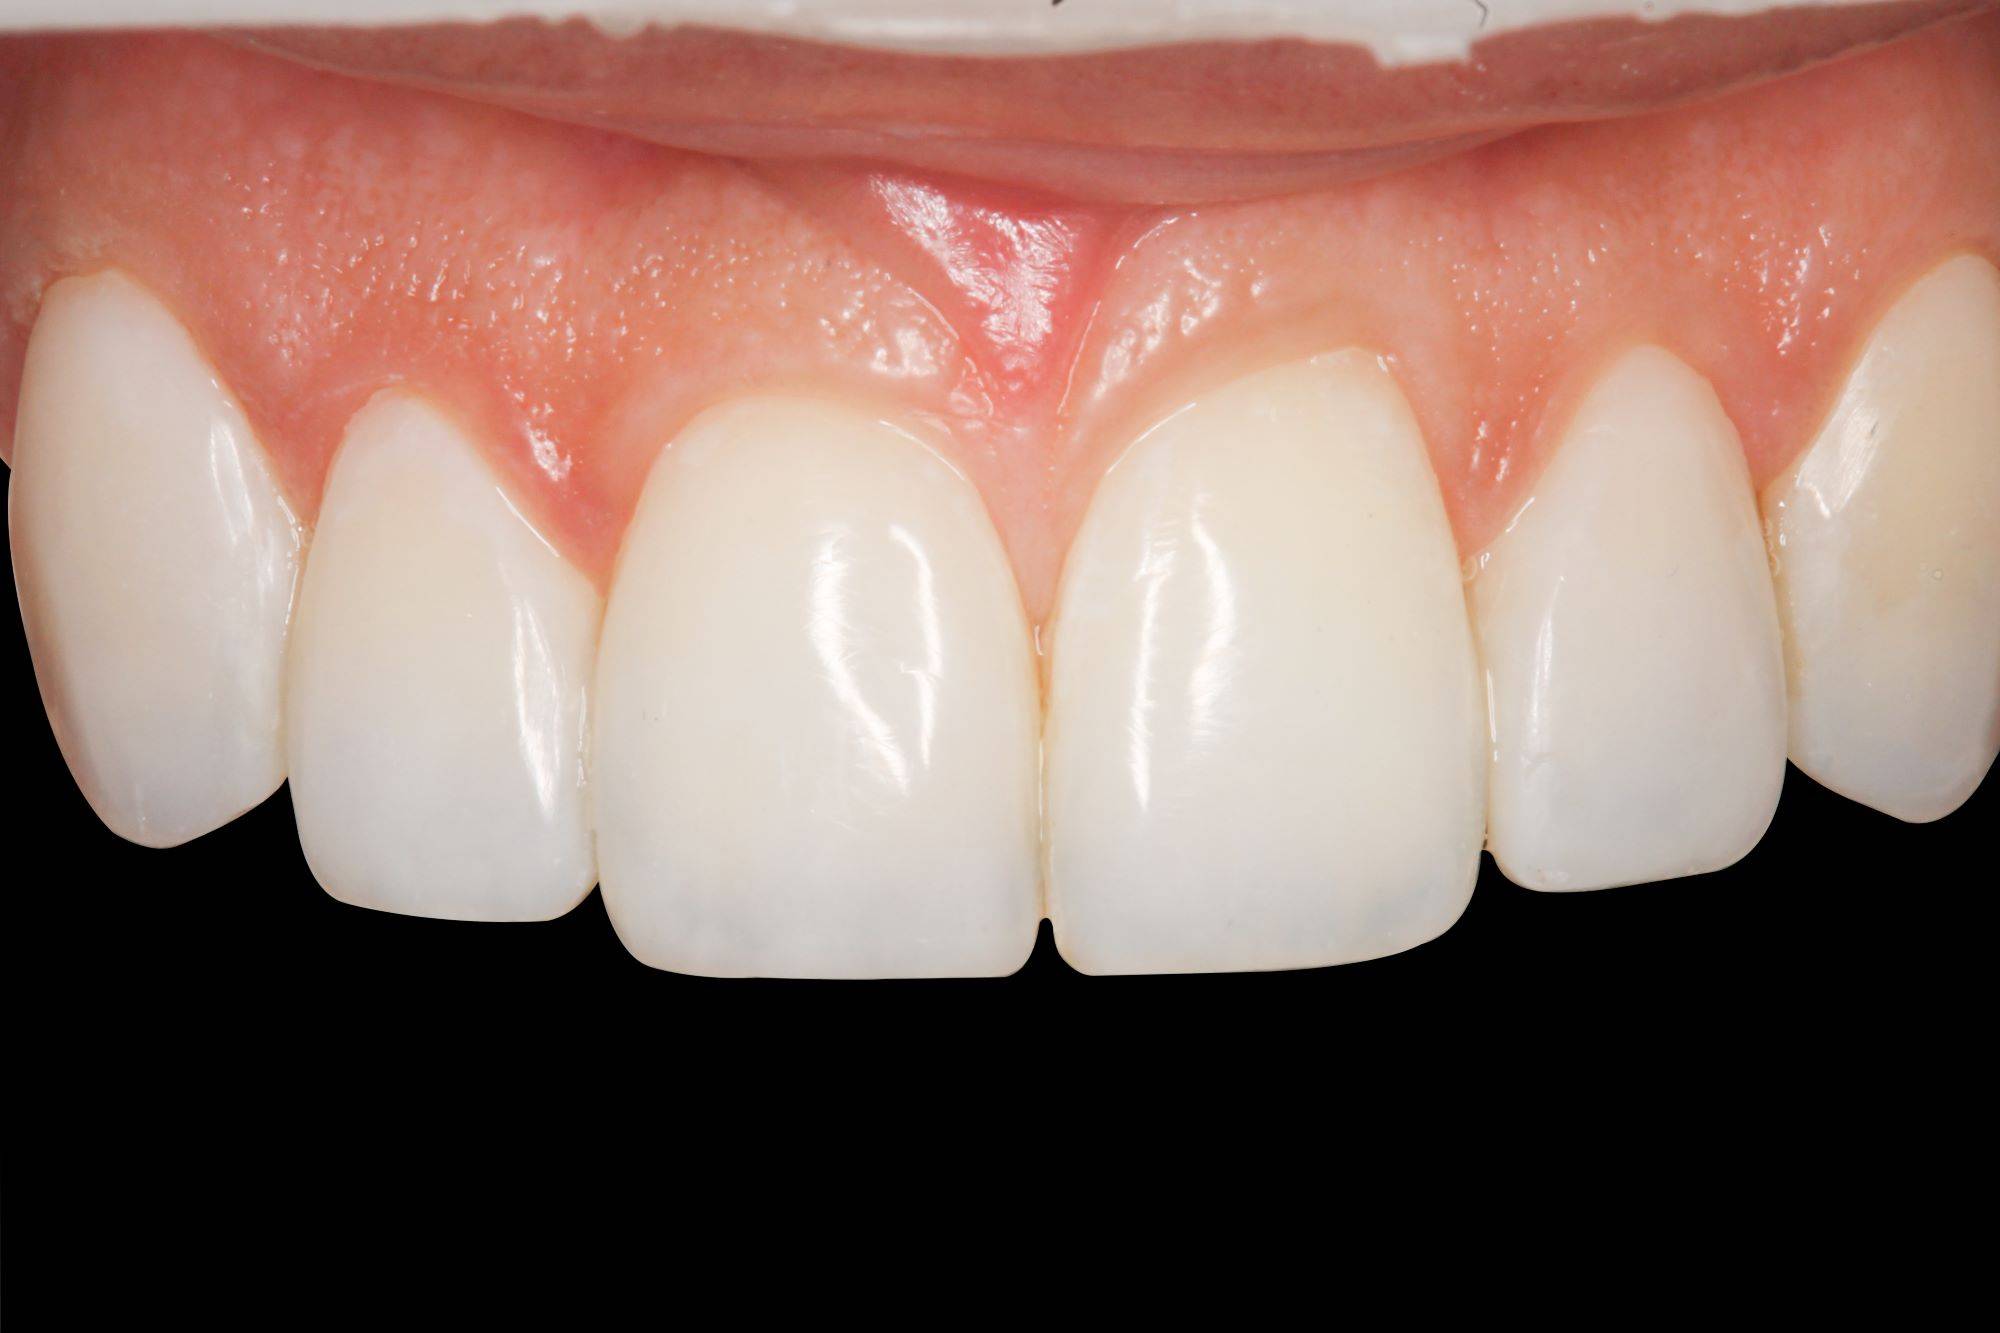 upper teeth after restoration in black background